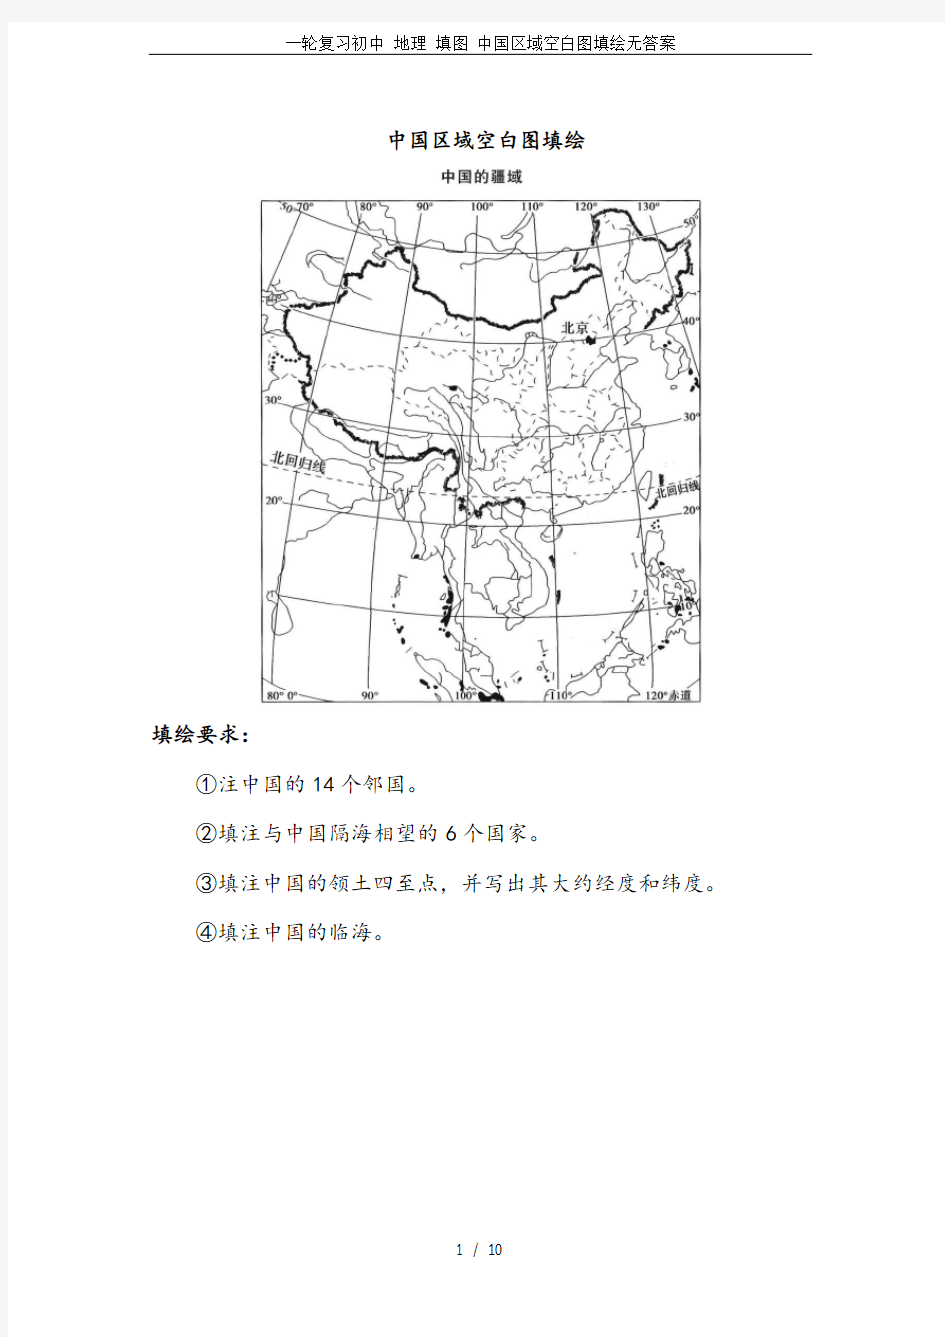 一轮复习初中 地理 填图 中国区域空白图填绘无答案